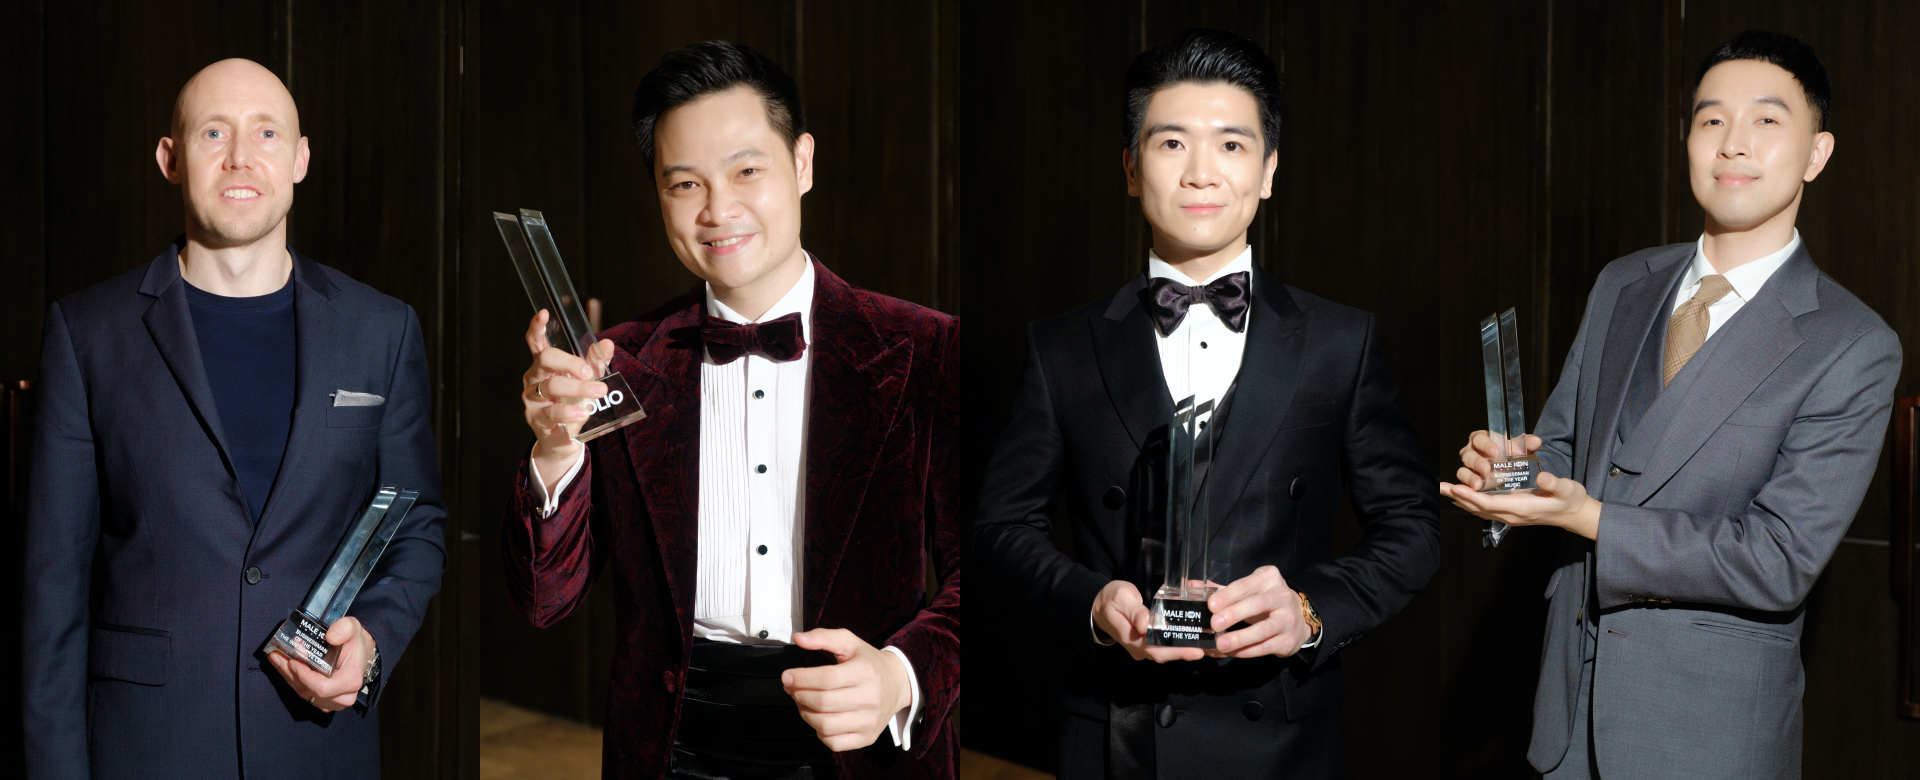 Male Icon Awards 2023: 4 lãnh đạo thế hệ mới được vinh danh trong hạng mục “Business Awards”